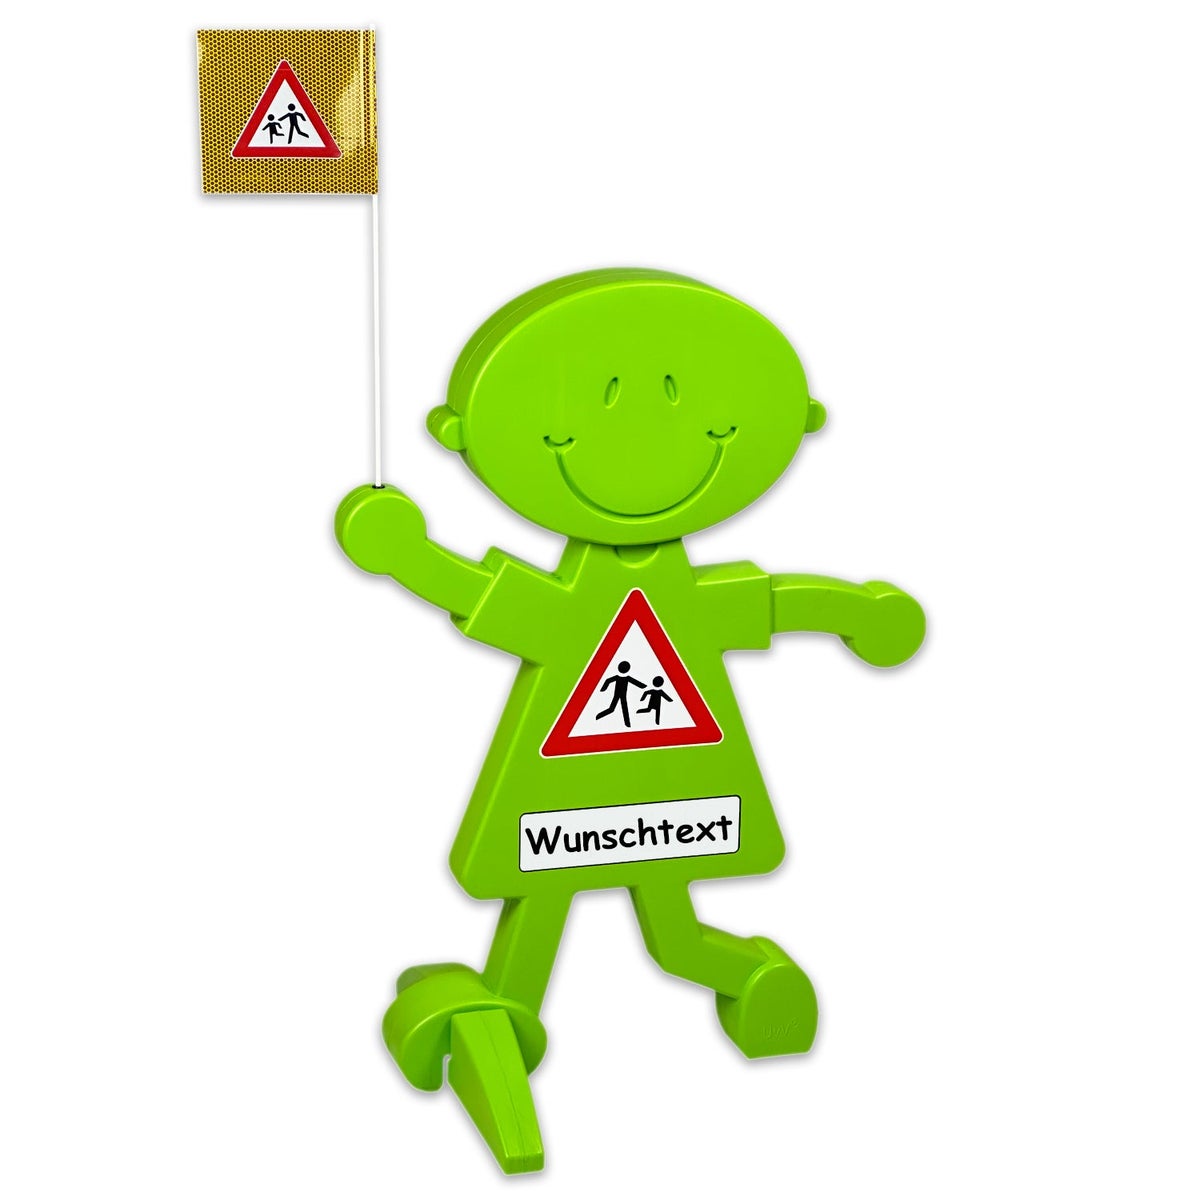 3D Warnschild Vorsicht spielende Kinder mit reflektierender Folie und Wunschtext für mehr Verkehrssicherheit / (1 Stück)